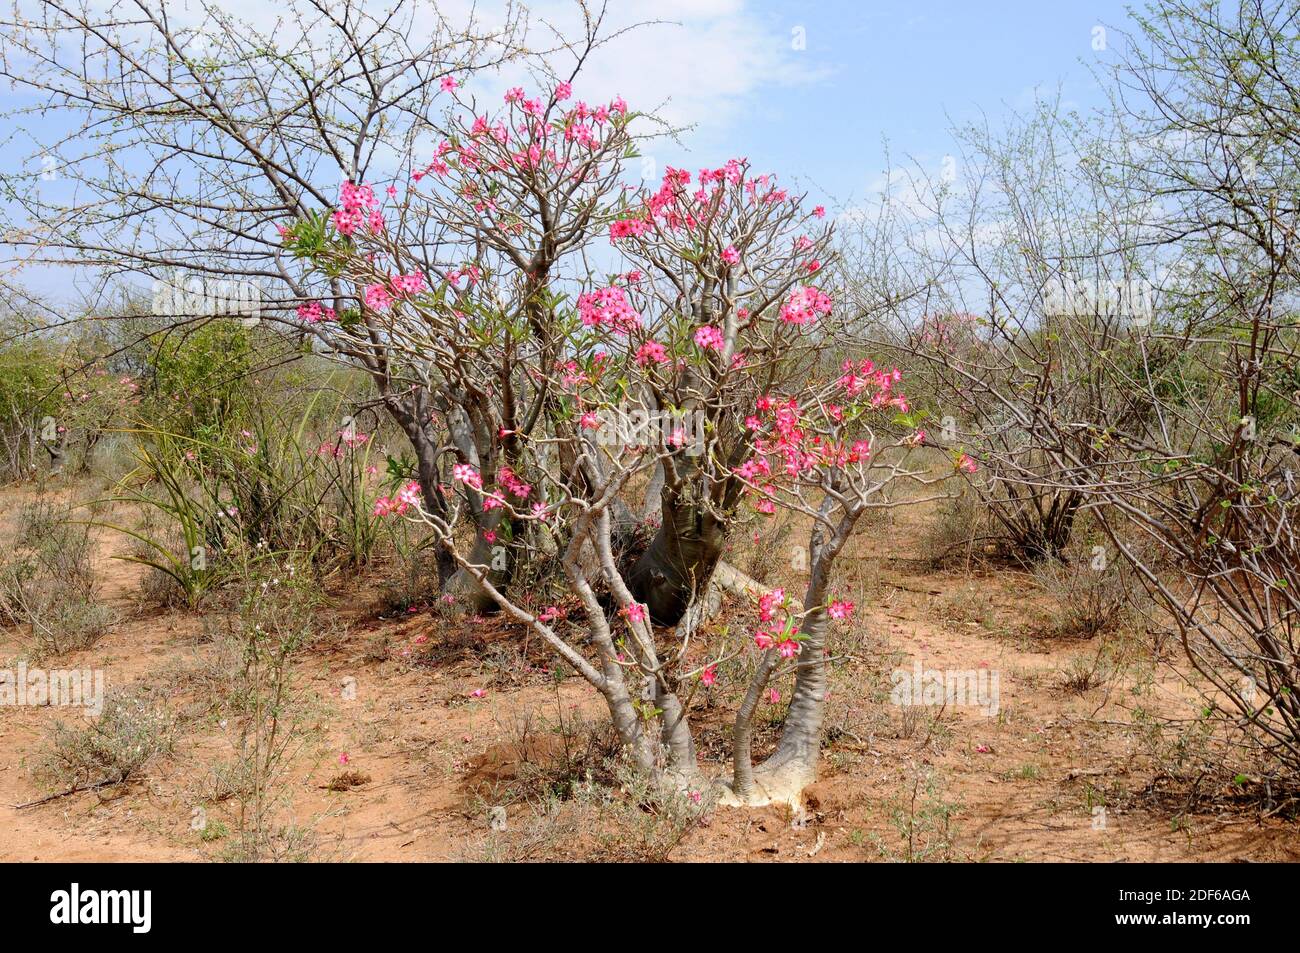 Wüstenrose, Impala Lilie, Mock Azalea oder Sabi Star (Adenium obesum somalense) ist in Äthiopien, Somalia und dem Sudan beheimatet. Dieser saftige Strauch enthält Stockfoto